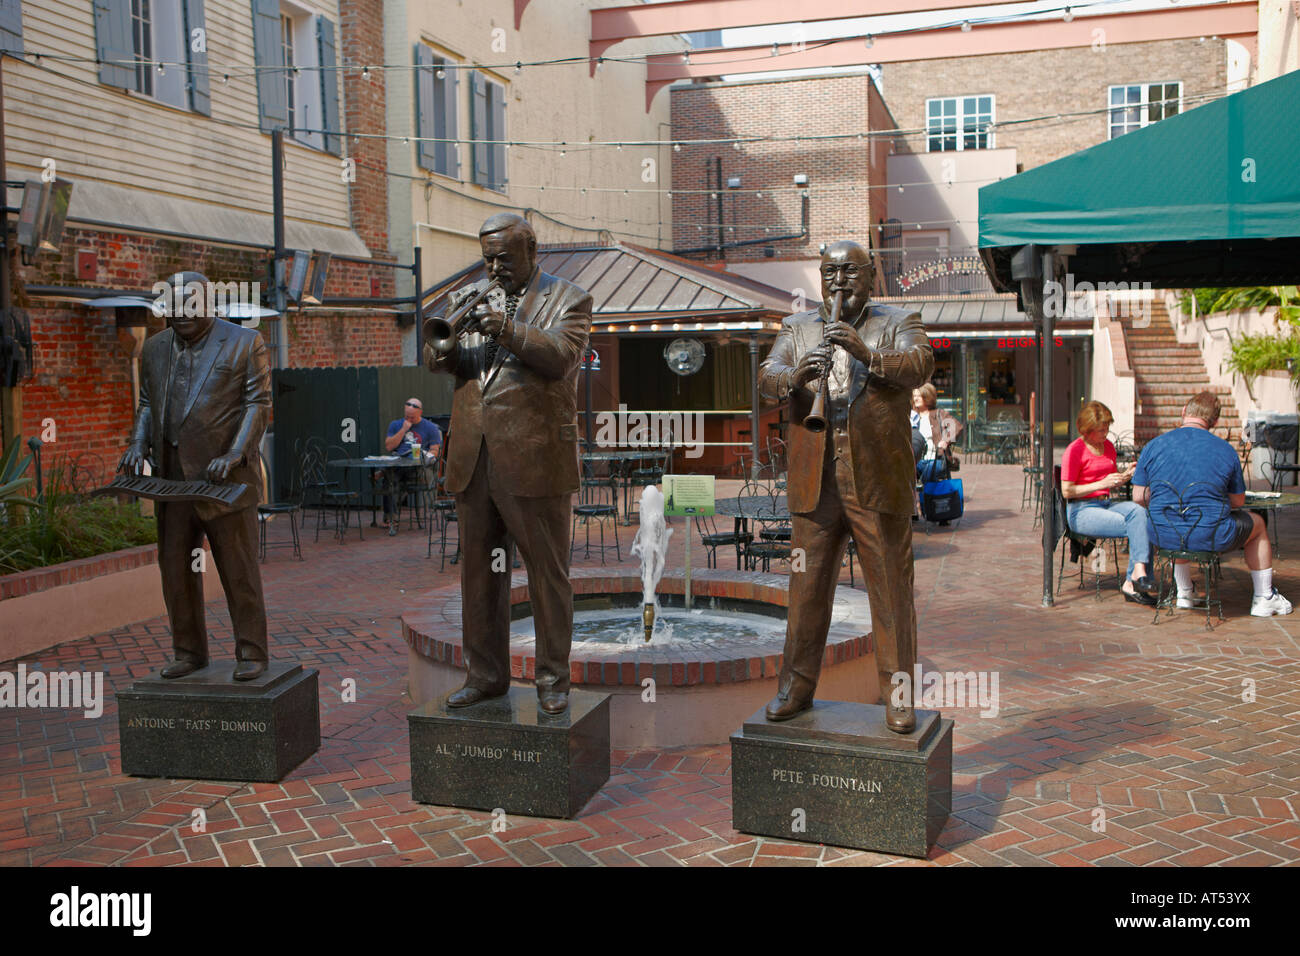 Des statues en bronze de célèbres musiciens de jazz - Antoine Domino, Al Hirt et Pete Fountain sur Bourbon Street. Quartier français, la Nouvelle Orléans, Louisiane, USA. Banque D'Images